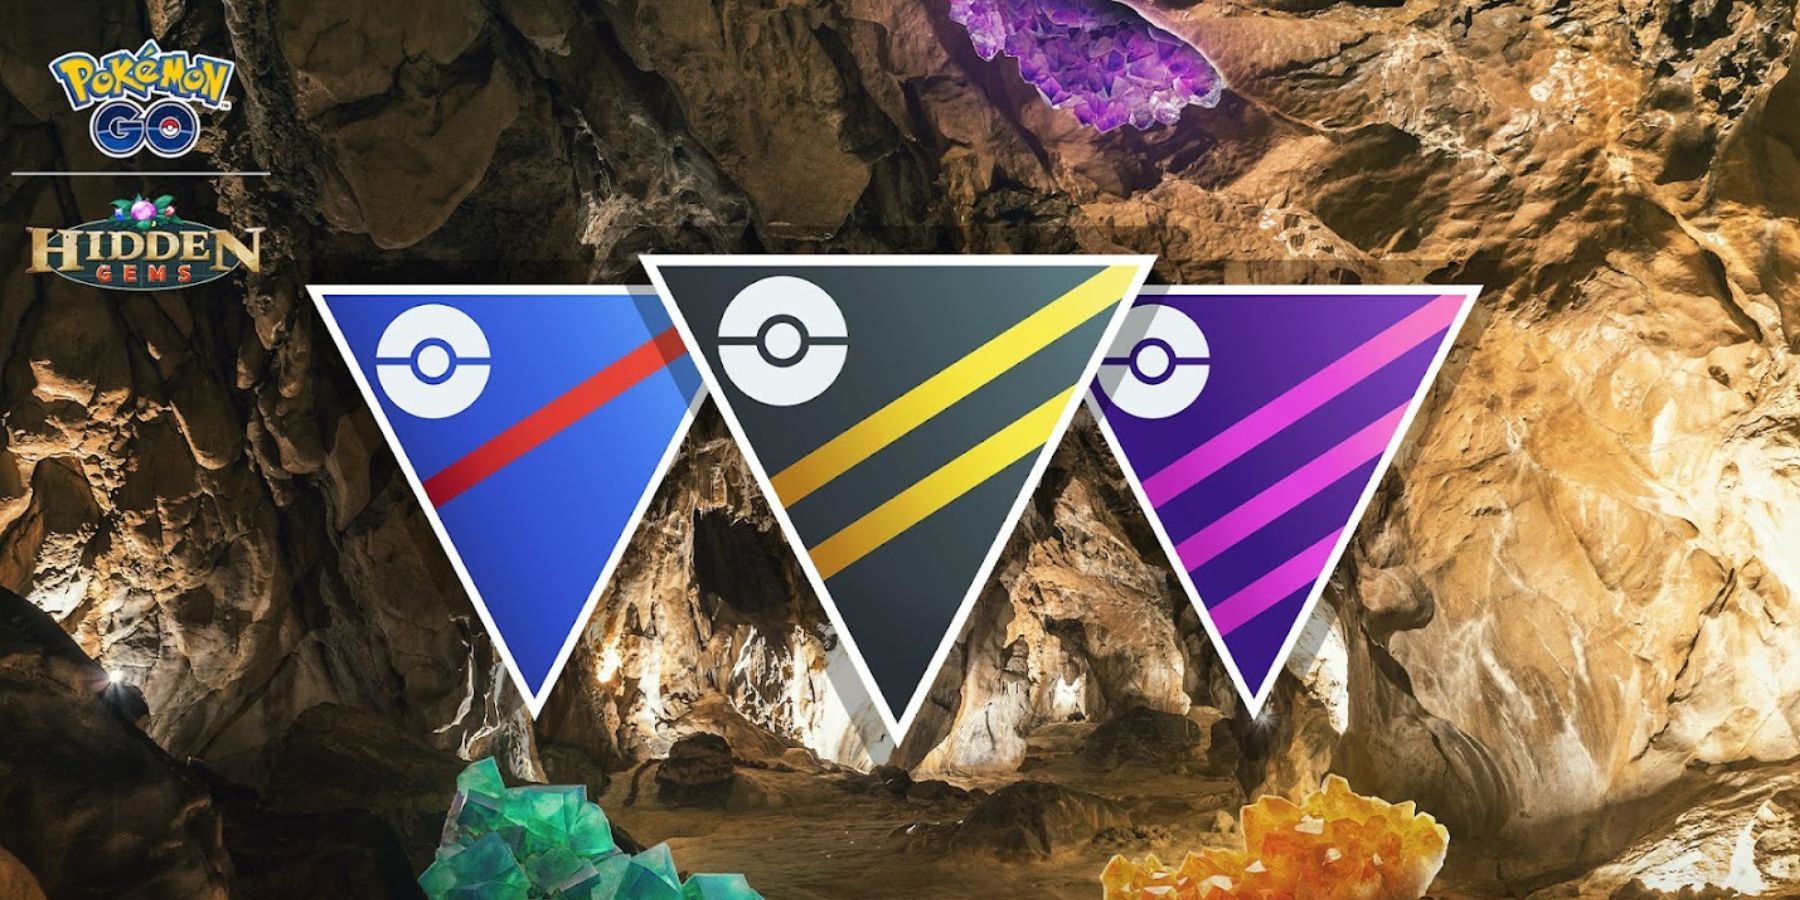 image showing pokemon go hidden gems go battle league poster.